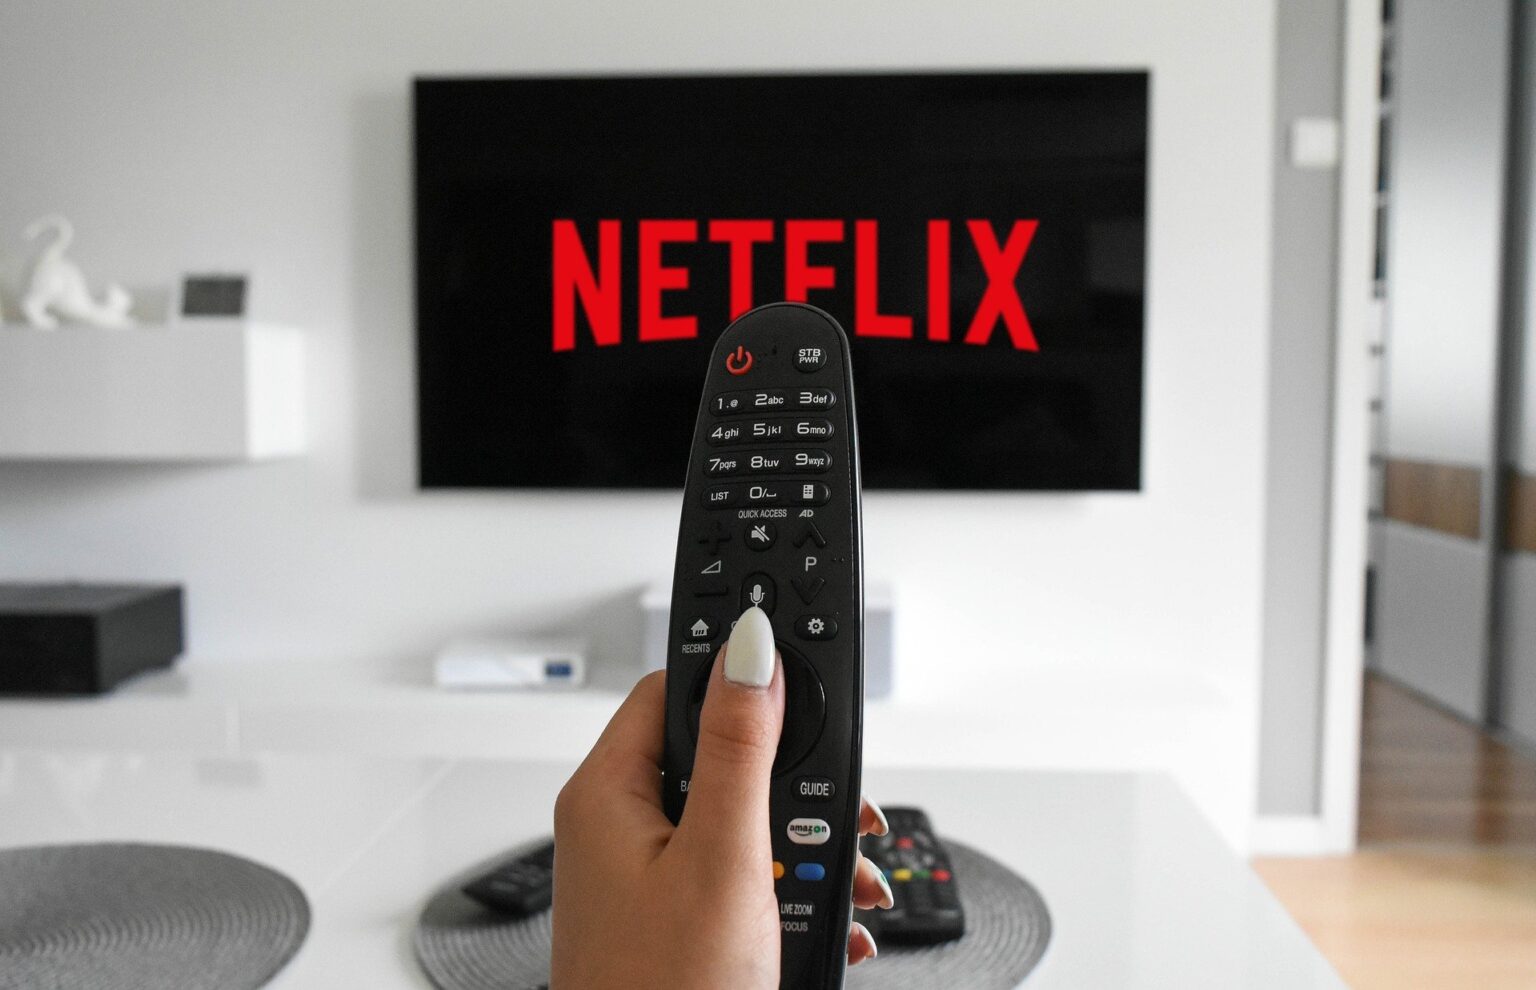 Netflix prices 2021 South Africa Netflix Premium package Netflix packages South Africa 2021